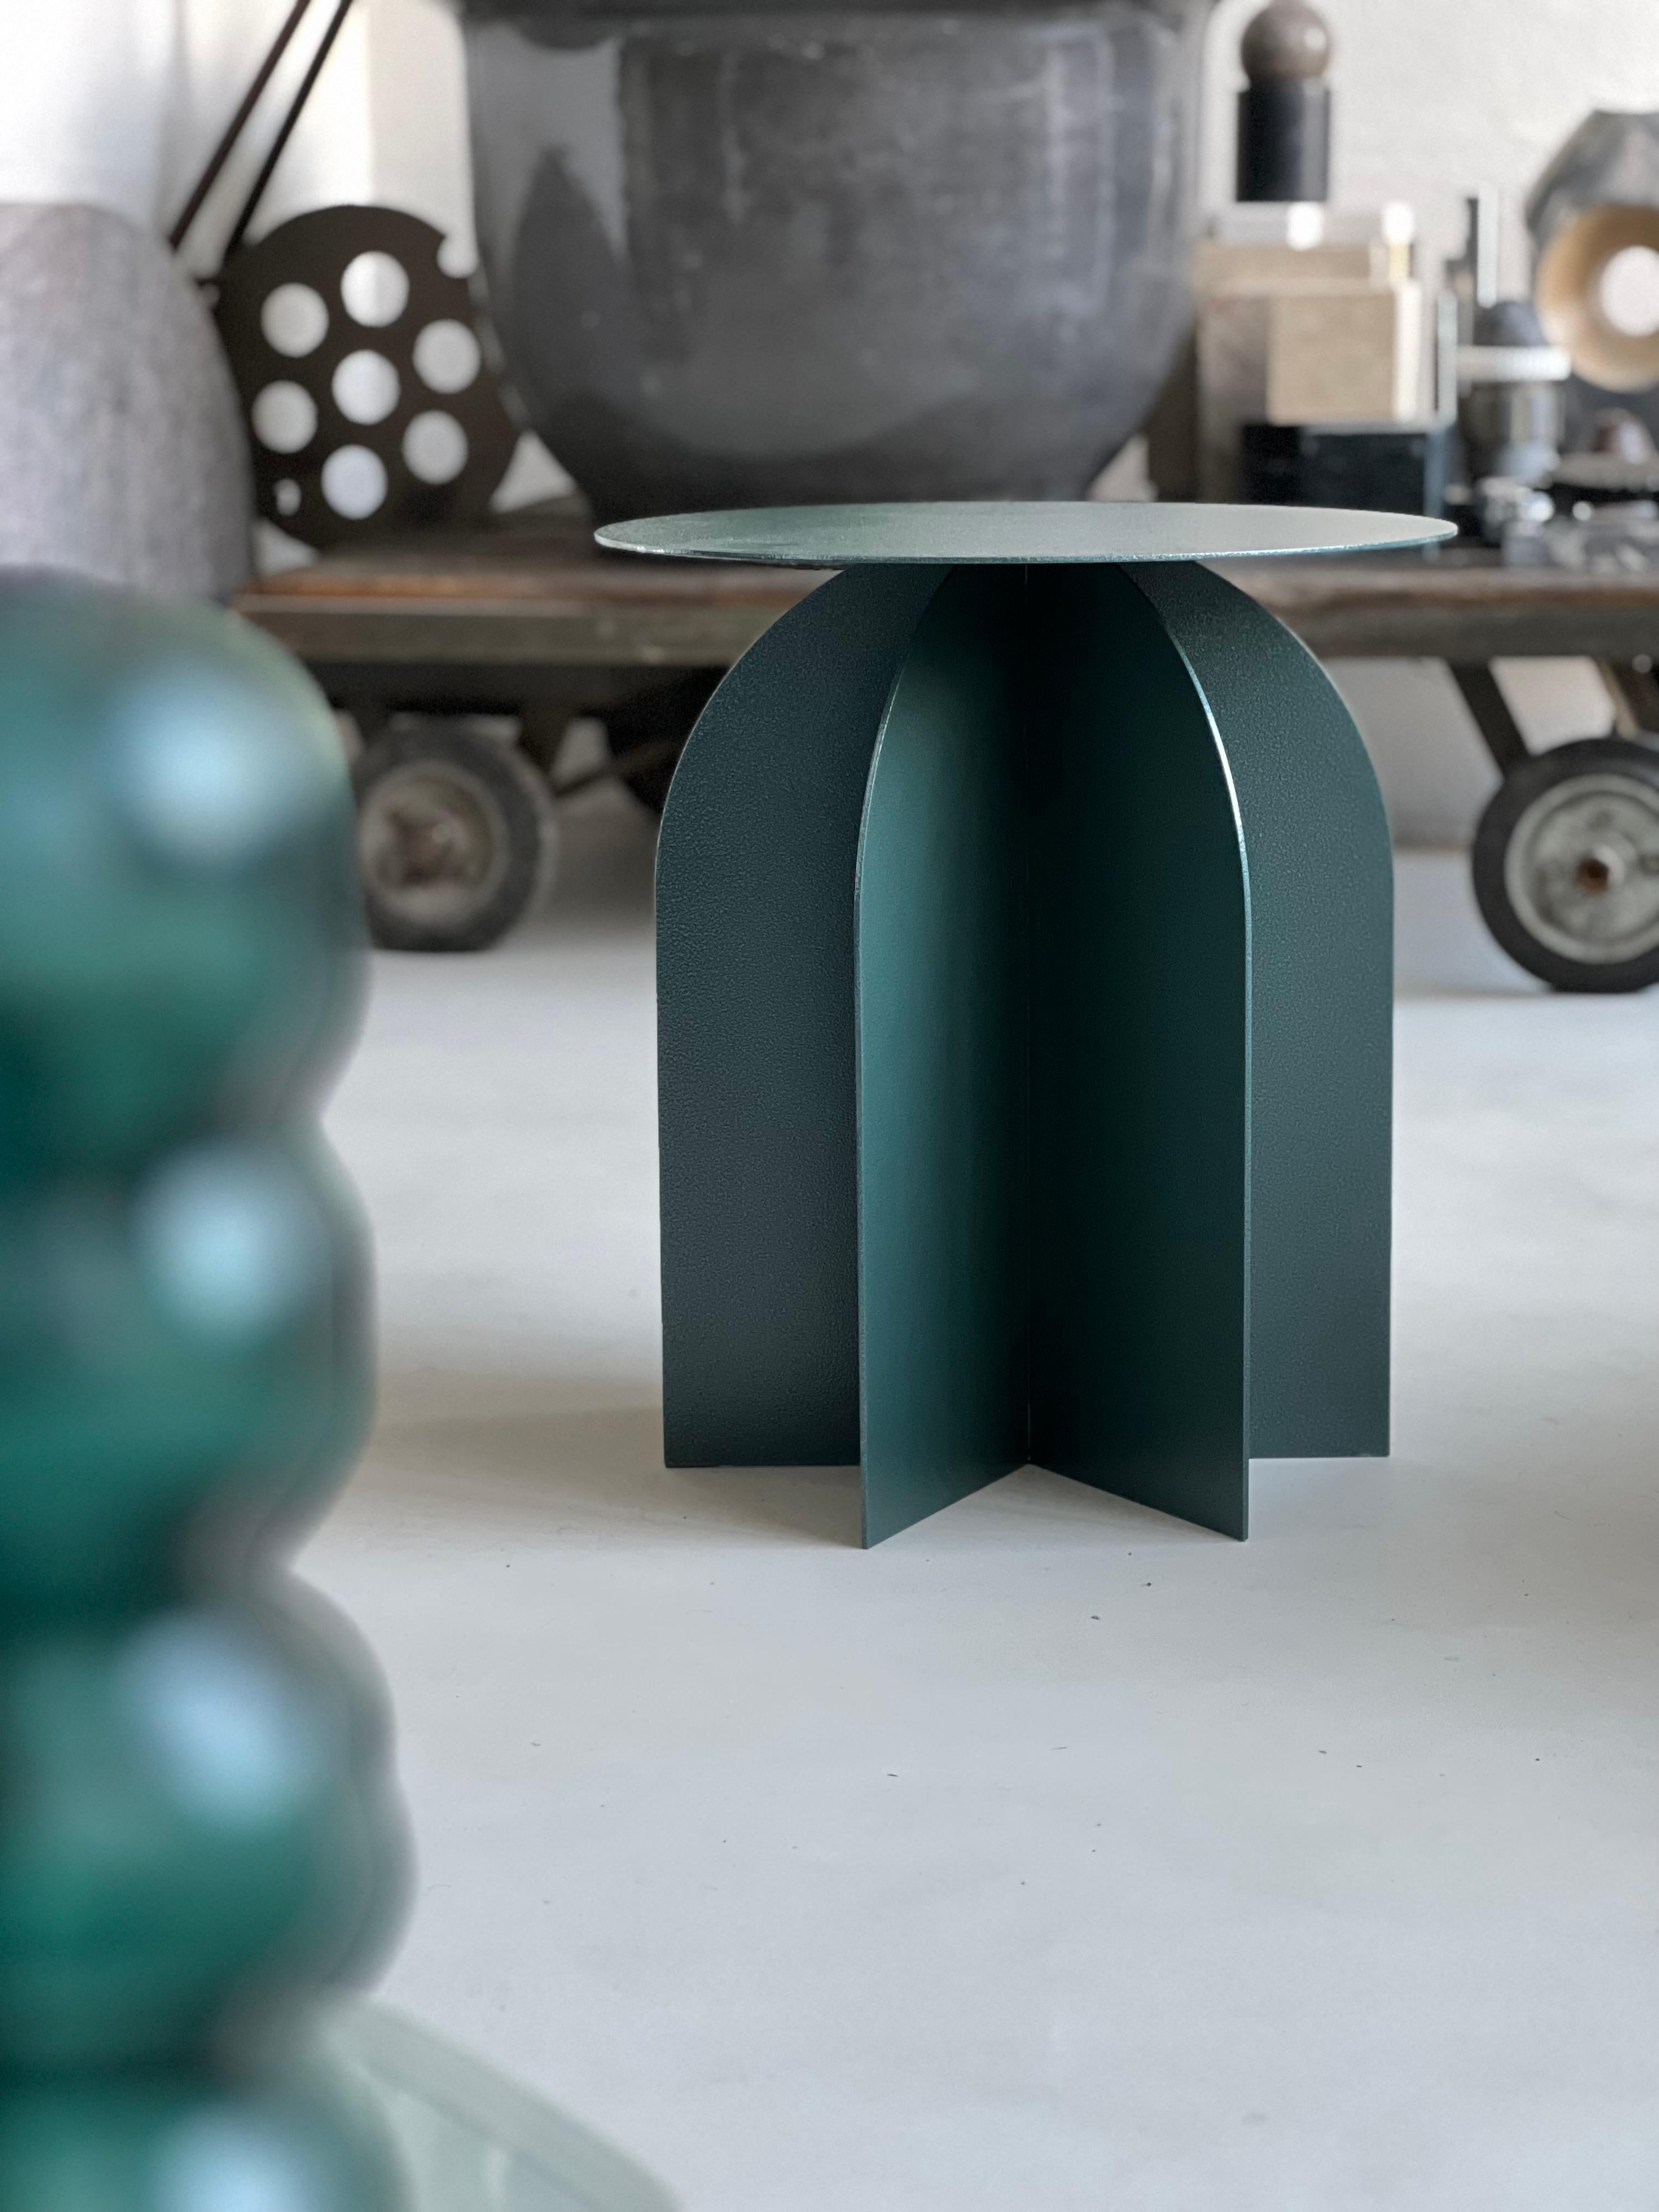 Zeitgenössischer Beistelltisch - Italienisches Collectional Design - Metalltisch 

Palladium Rocket wurde von Spinzi in Mailand entworfen und vereint die Referenzwelten des Studios: auf der einen Seite die italienische neoklassizistische Architektur